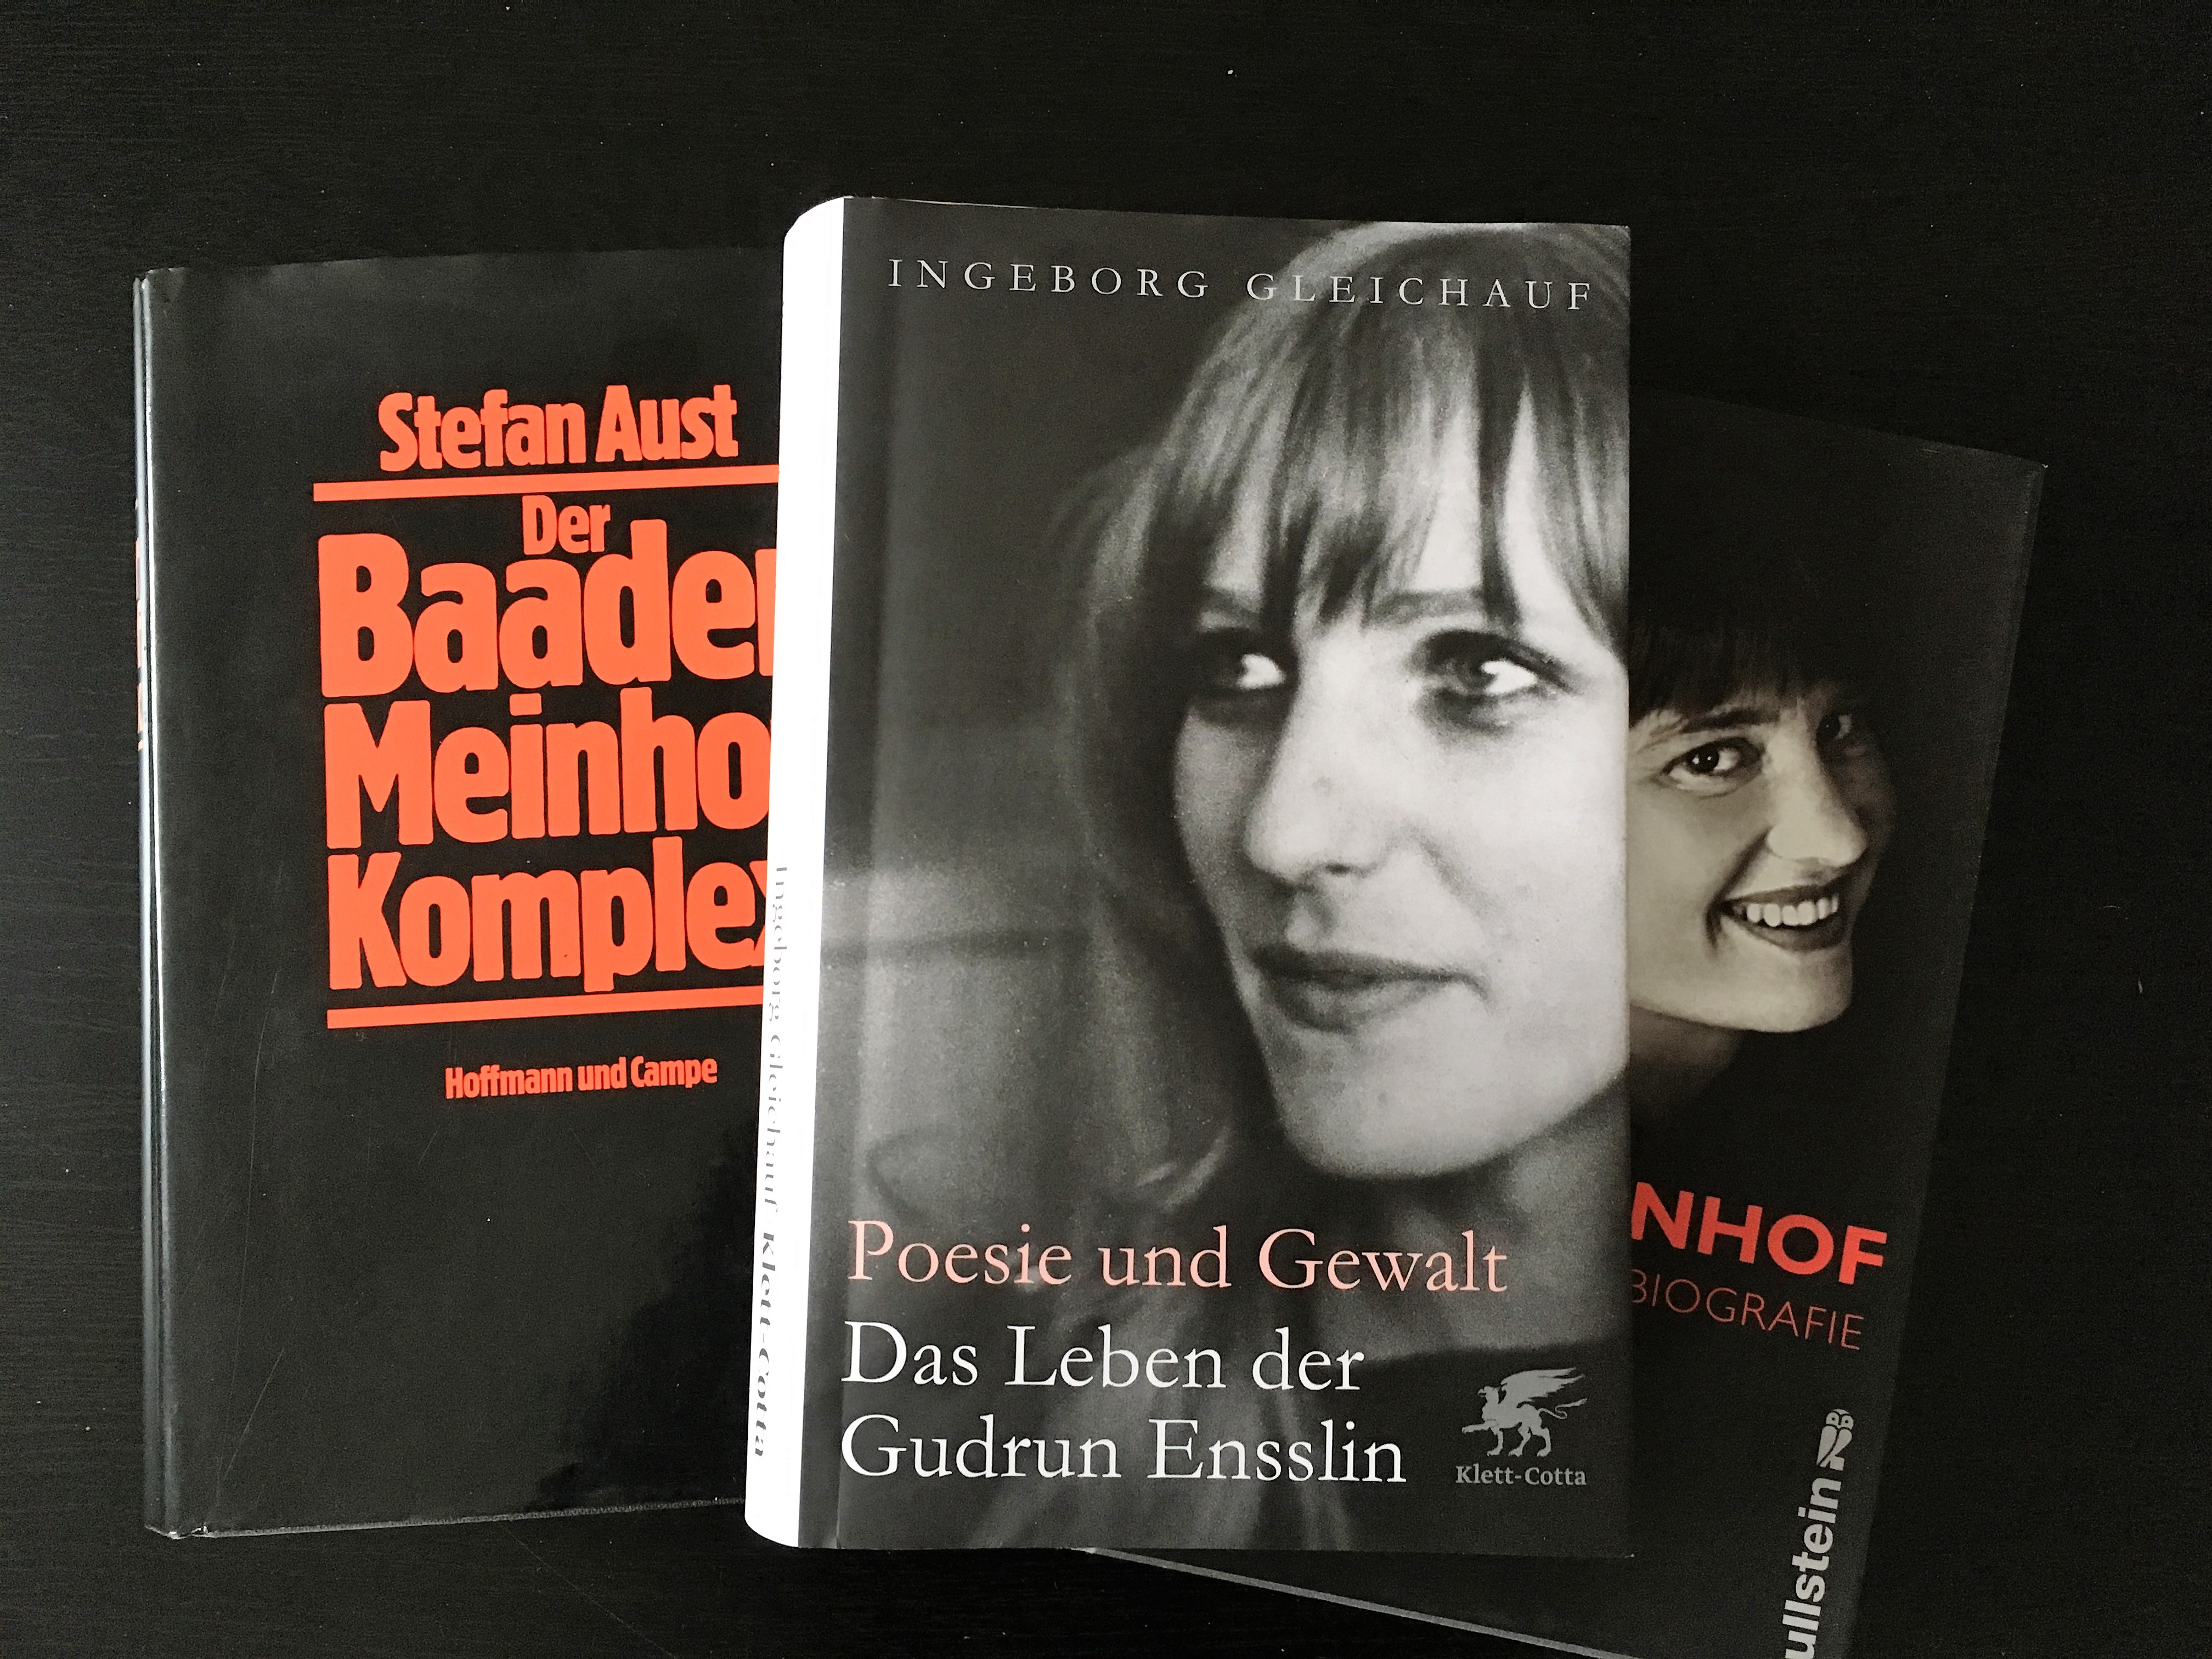 Ingeborg Gleichauf: Poesie und Gewalt. Das Leben der Gudrun Ensslin (2017)